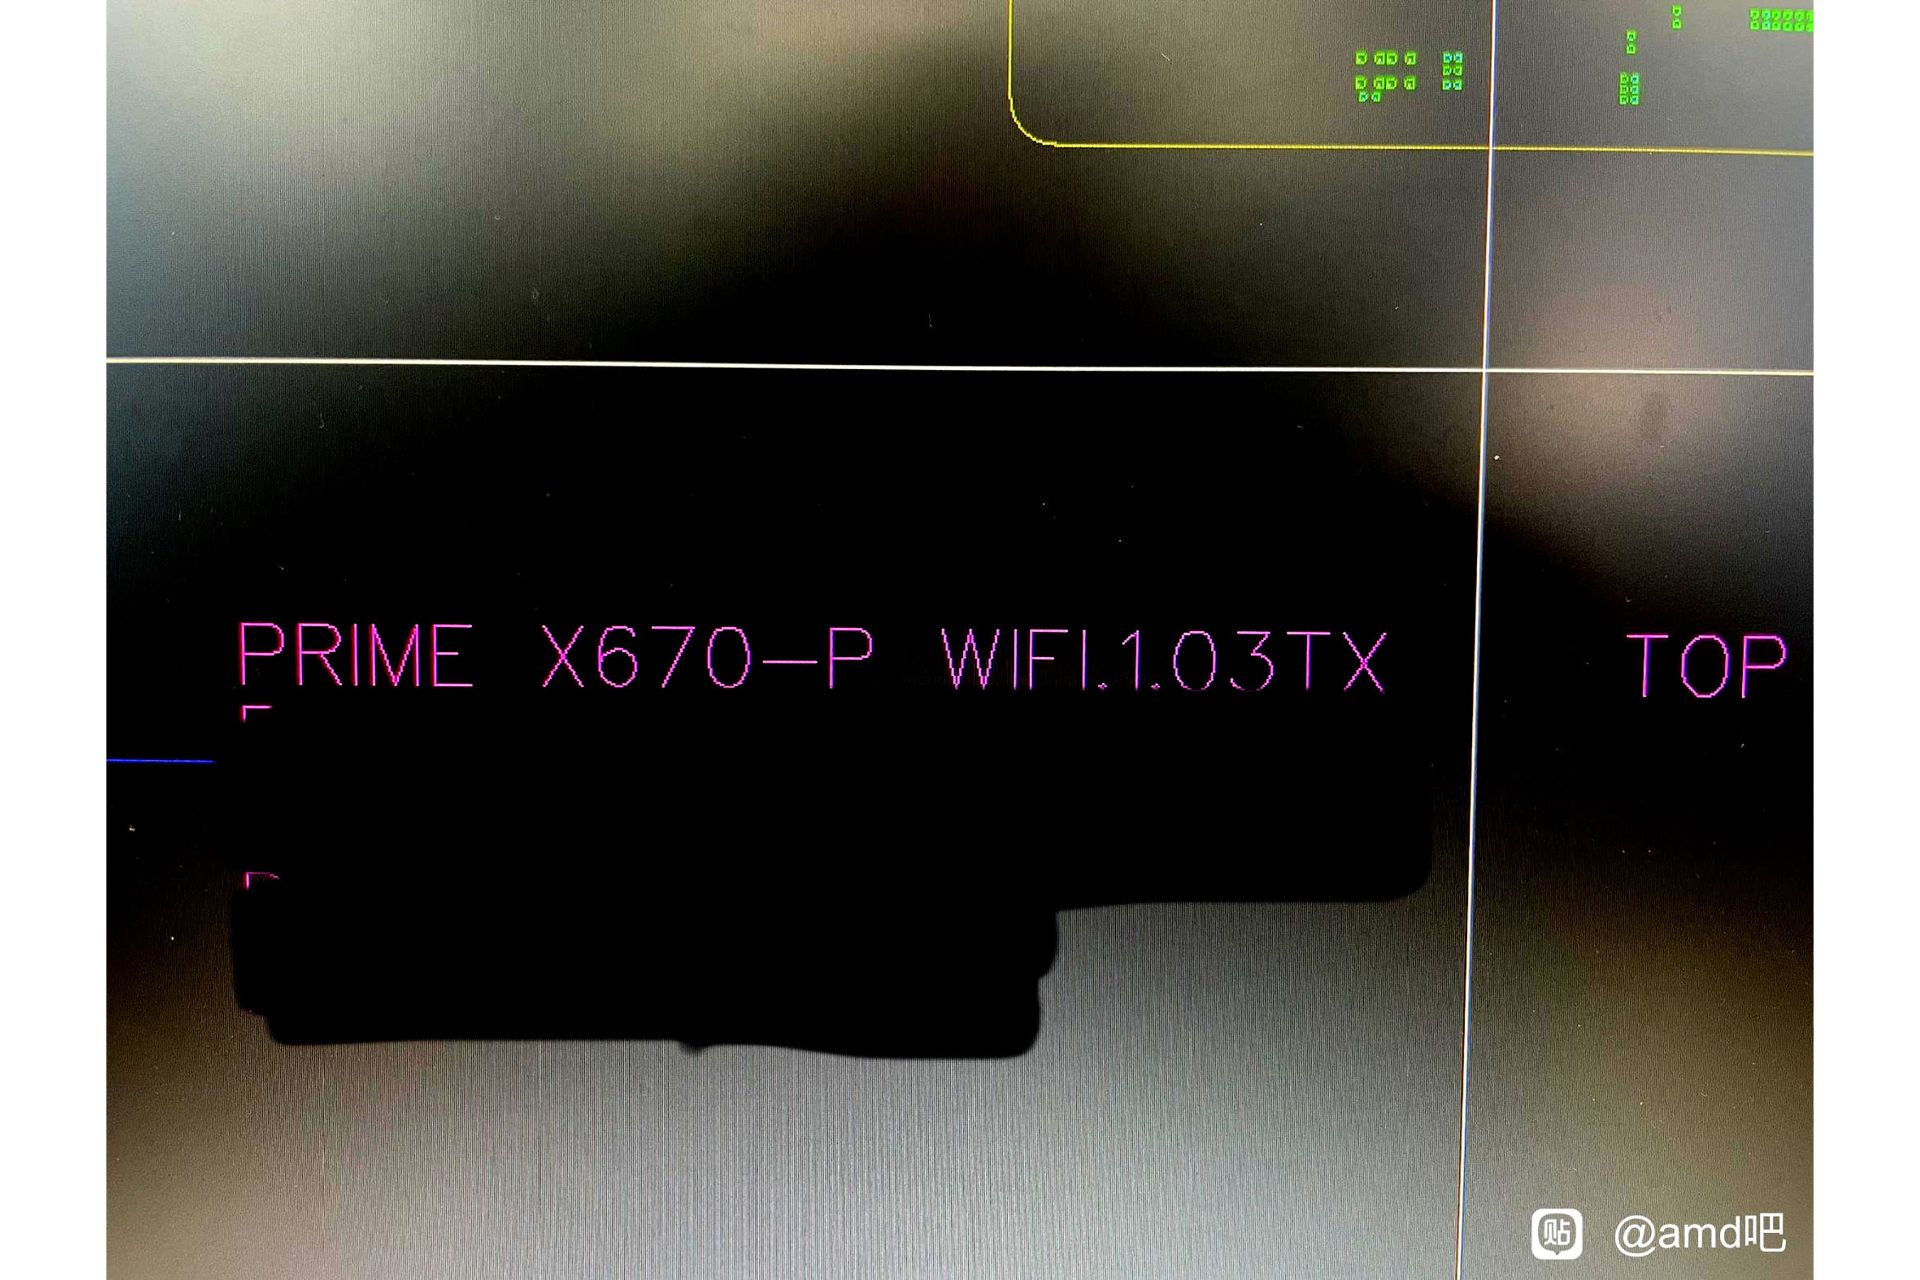 تایید نام مادربرد X670-P Prime WiFi ایسوس در تصاویر فاش شده